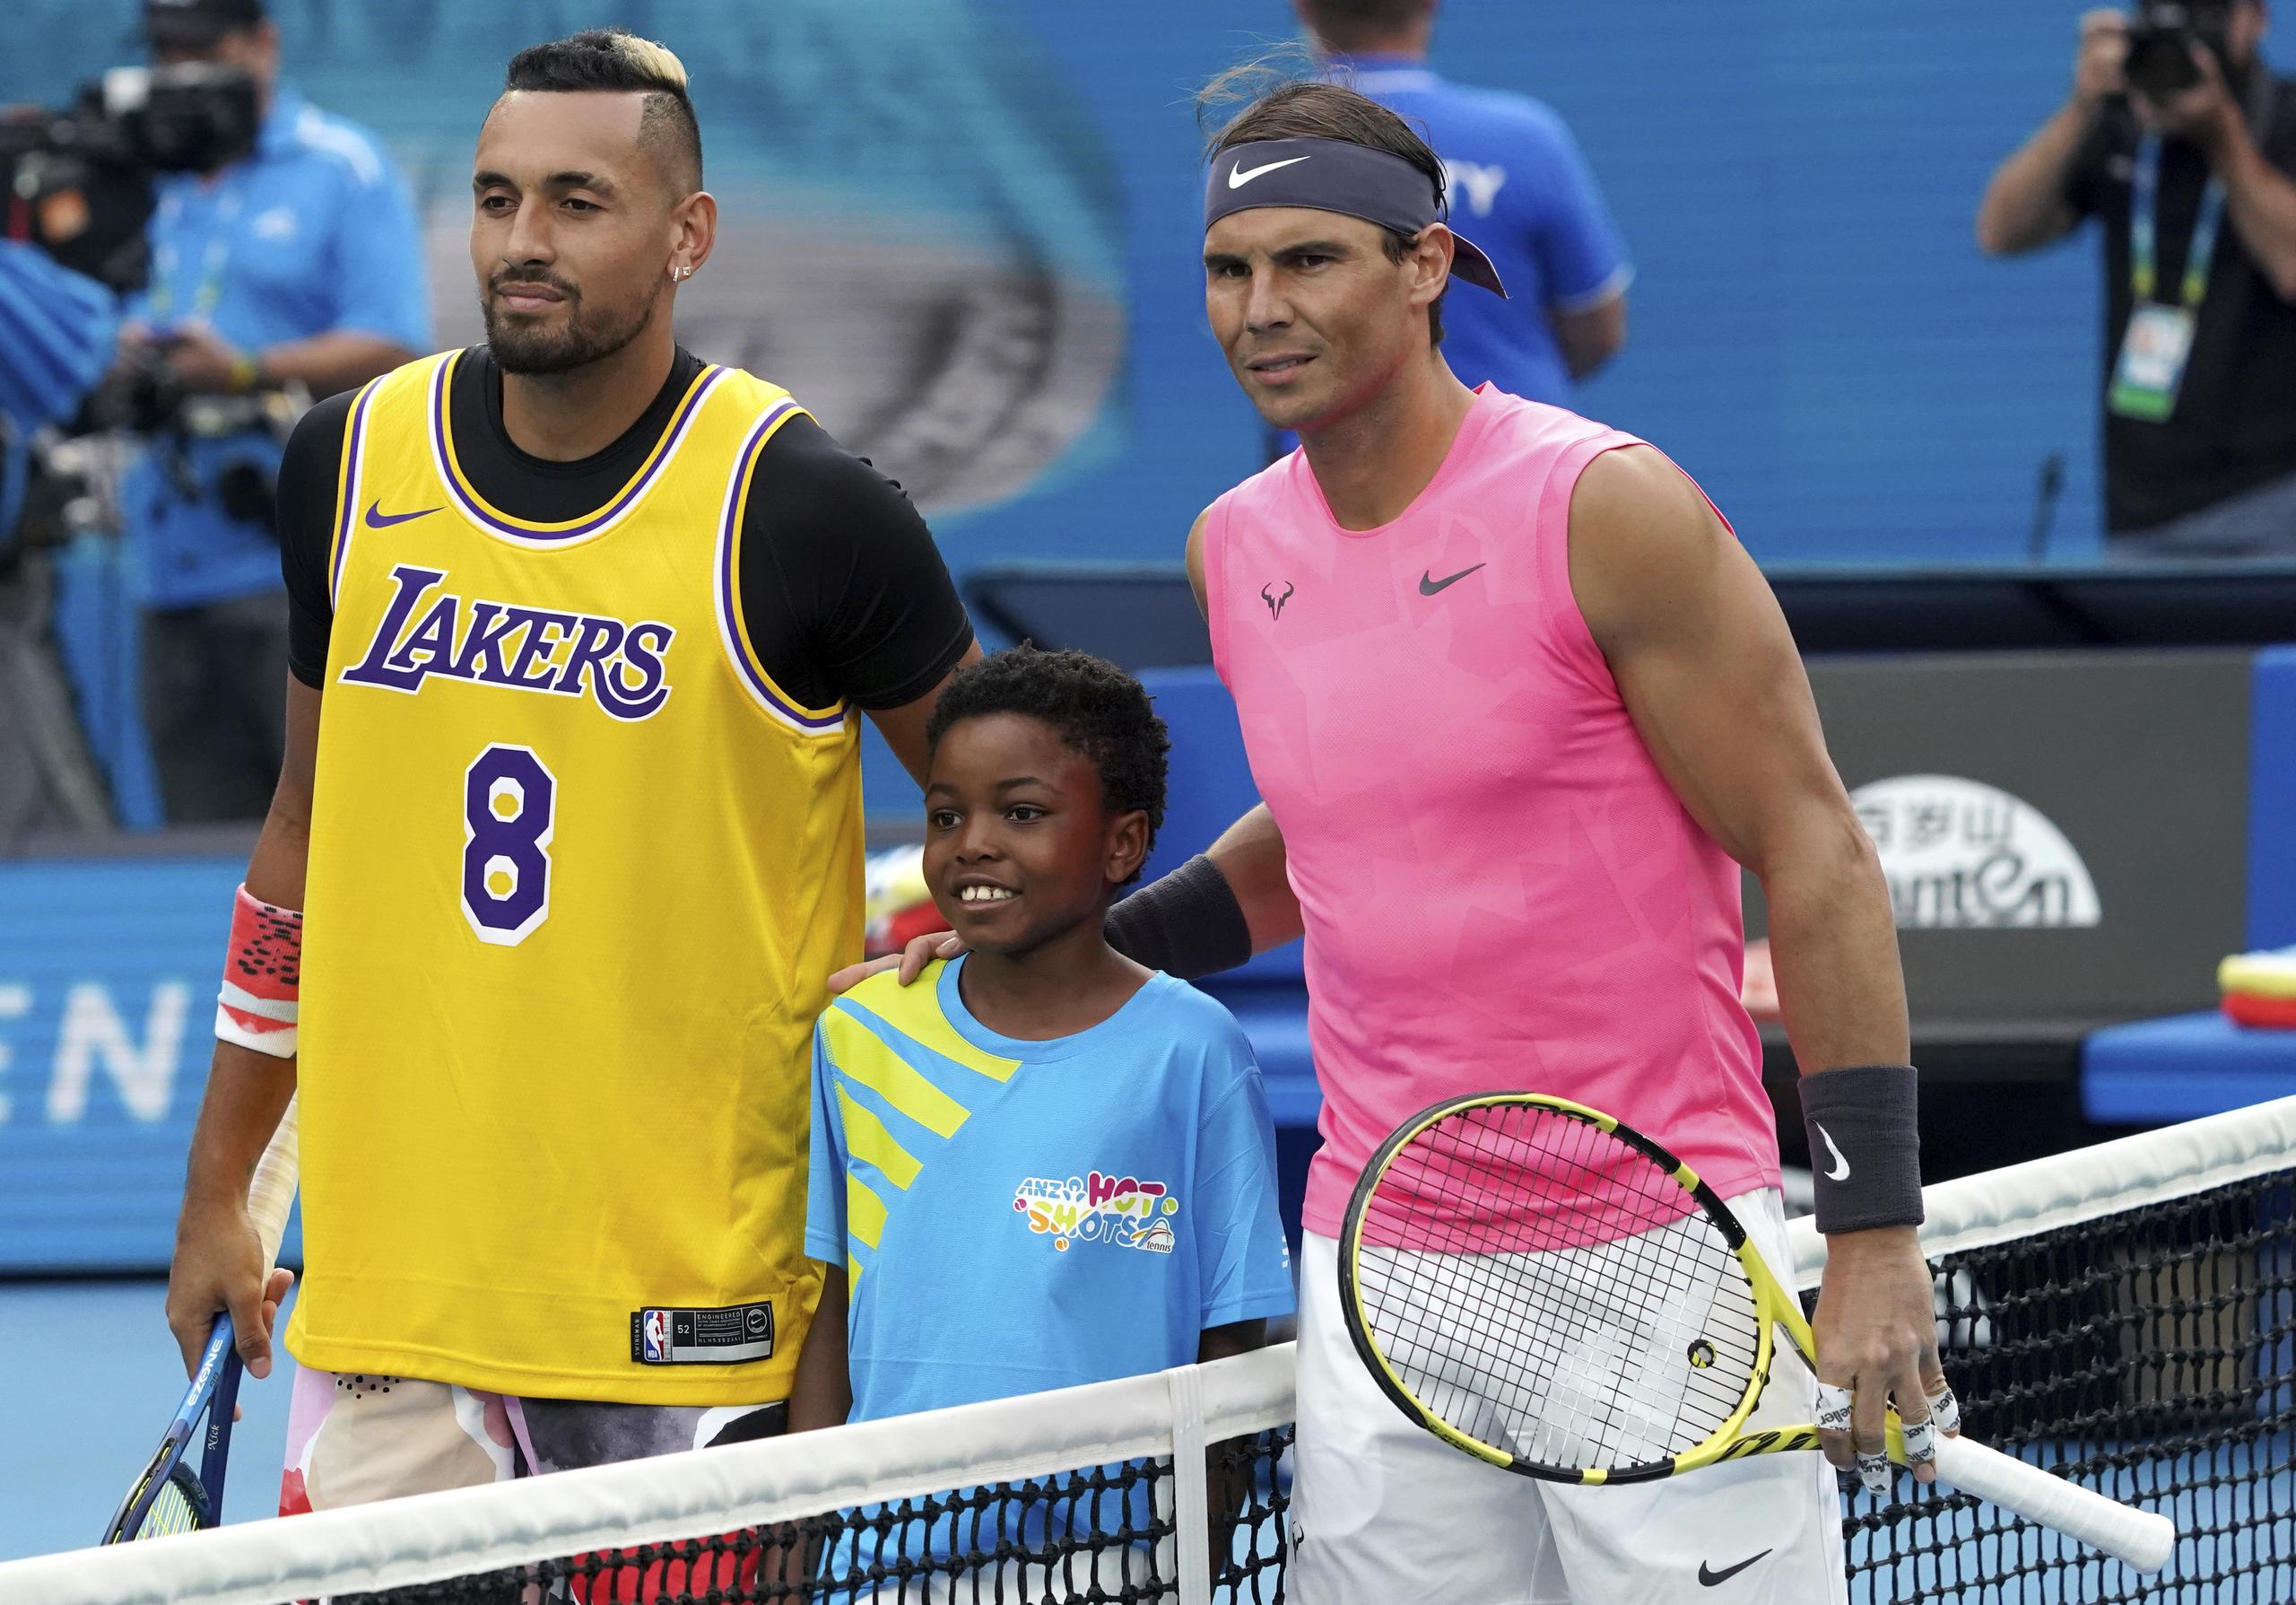 Con una camisa en honor a Kobe Bryant, el australiano Nick Kyrgios posa con un niño y con el español Rafael Nadal previo a su juego en el Abierto de Australia. (AP Photo/Lee Jin-man)